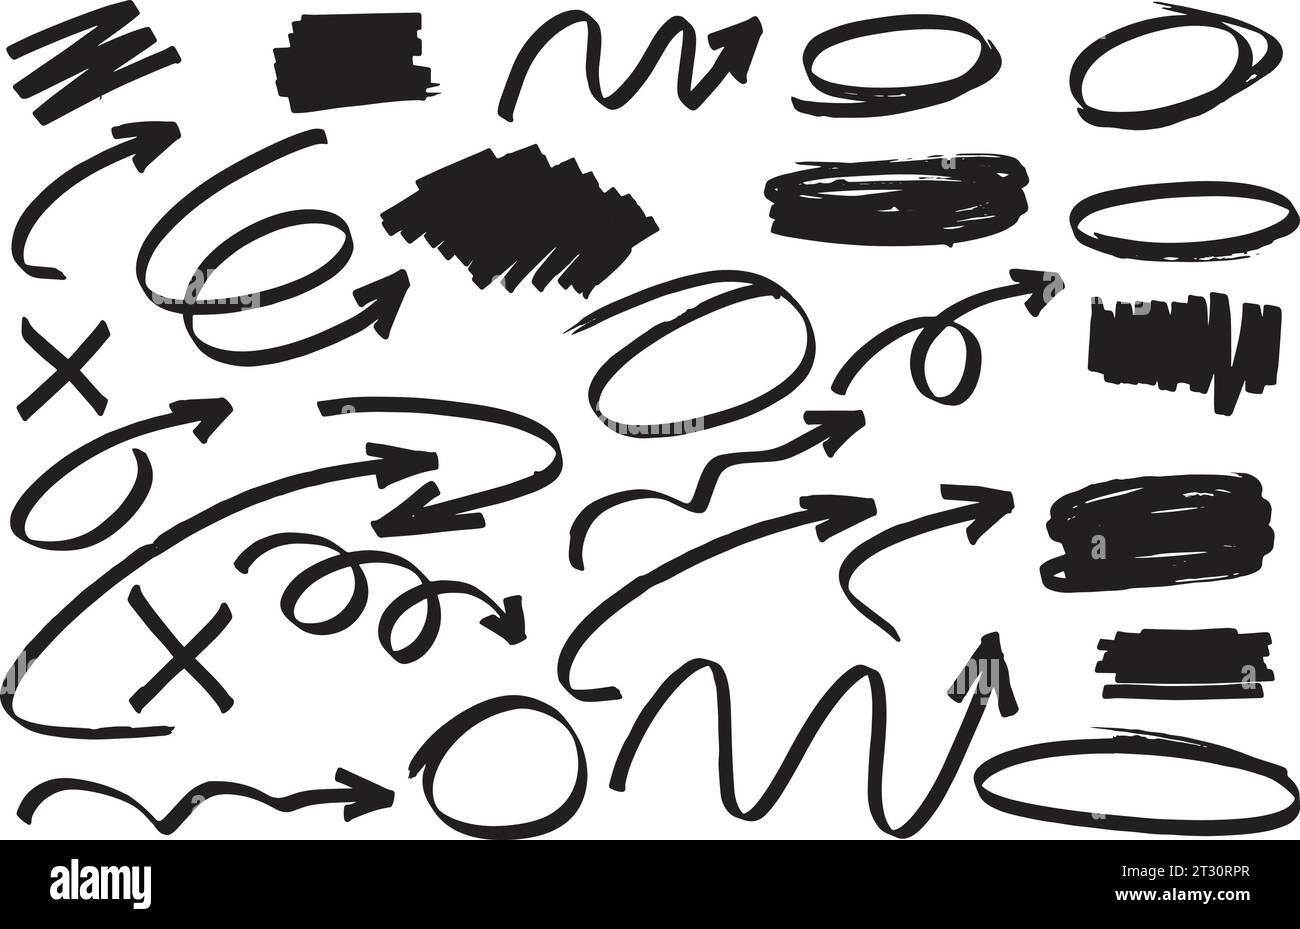 Markierstift-Markierungen verschiedener Formen. Runde kalligraphische Formen, Pfeilformen, Designressourcen mit echten losen und energetischen Bewegungen verschiedener Pfeile Stock Vektor